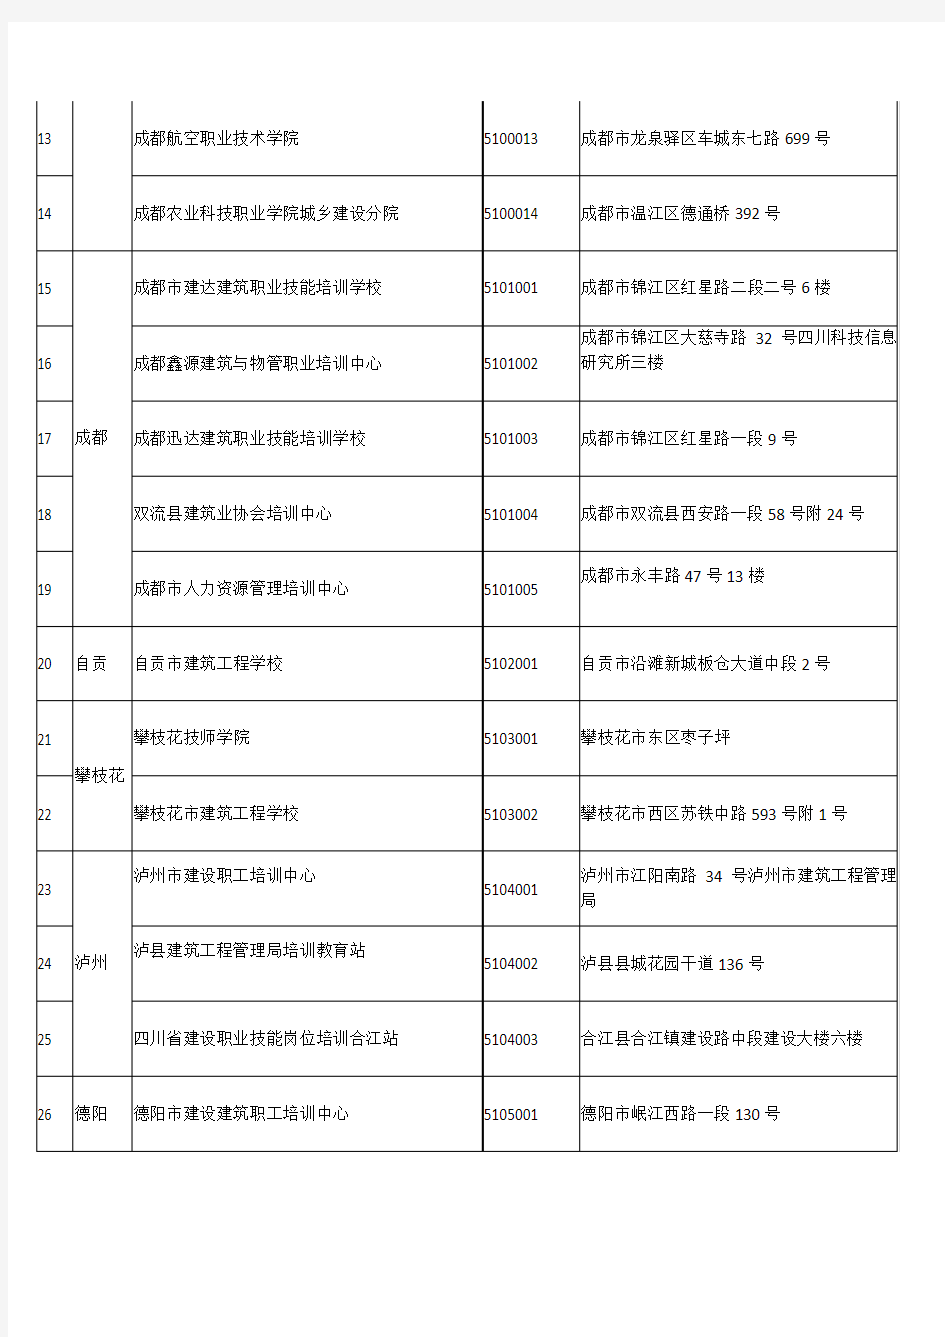 四川省建筑工人职业培训考核机构名单2016.01.19